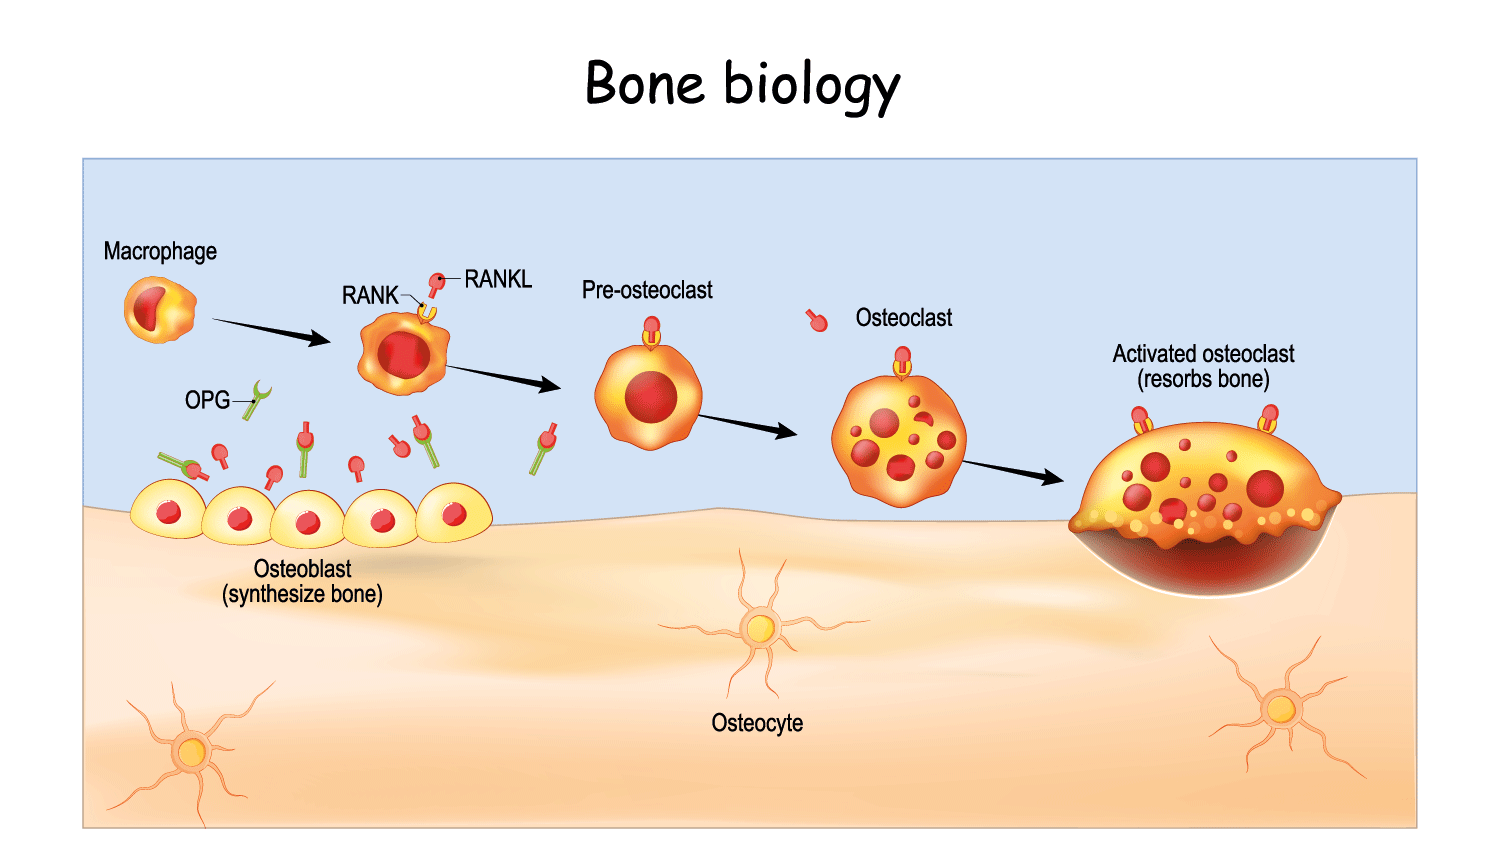 Bone biology- cancer and bone